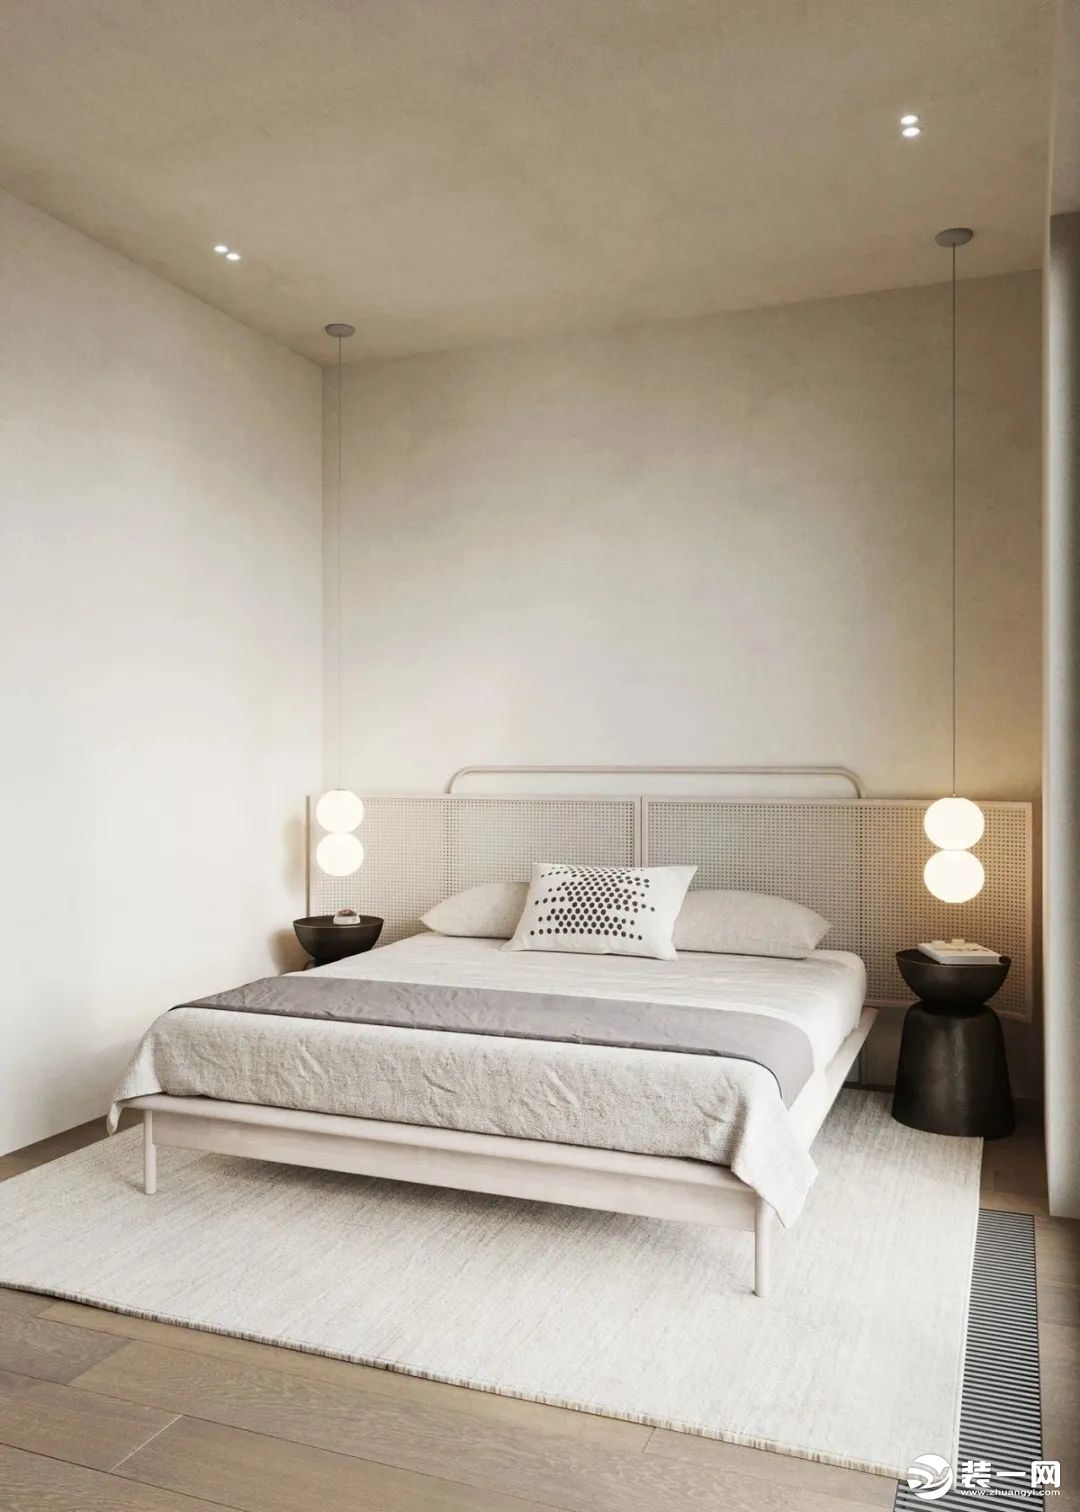 卧室整体采用低饱和色系，进入就给人一种温柔的放松感，将一侧阳台融入室内，宽敞明亮。